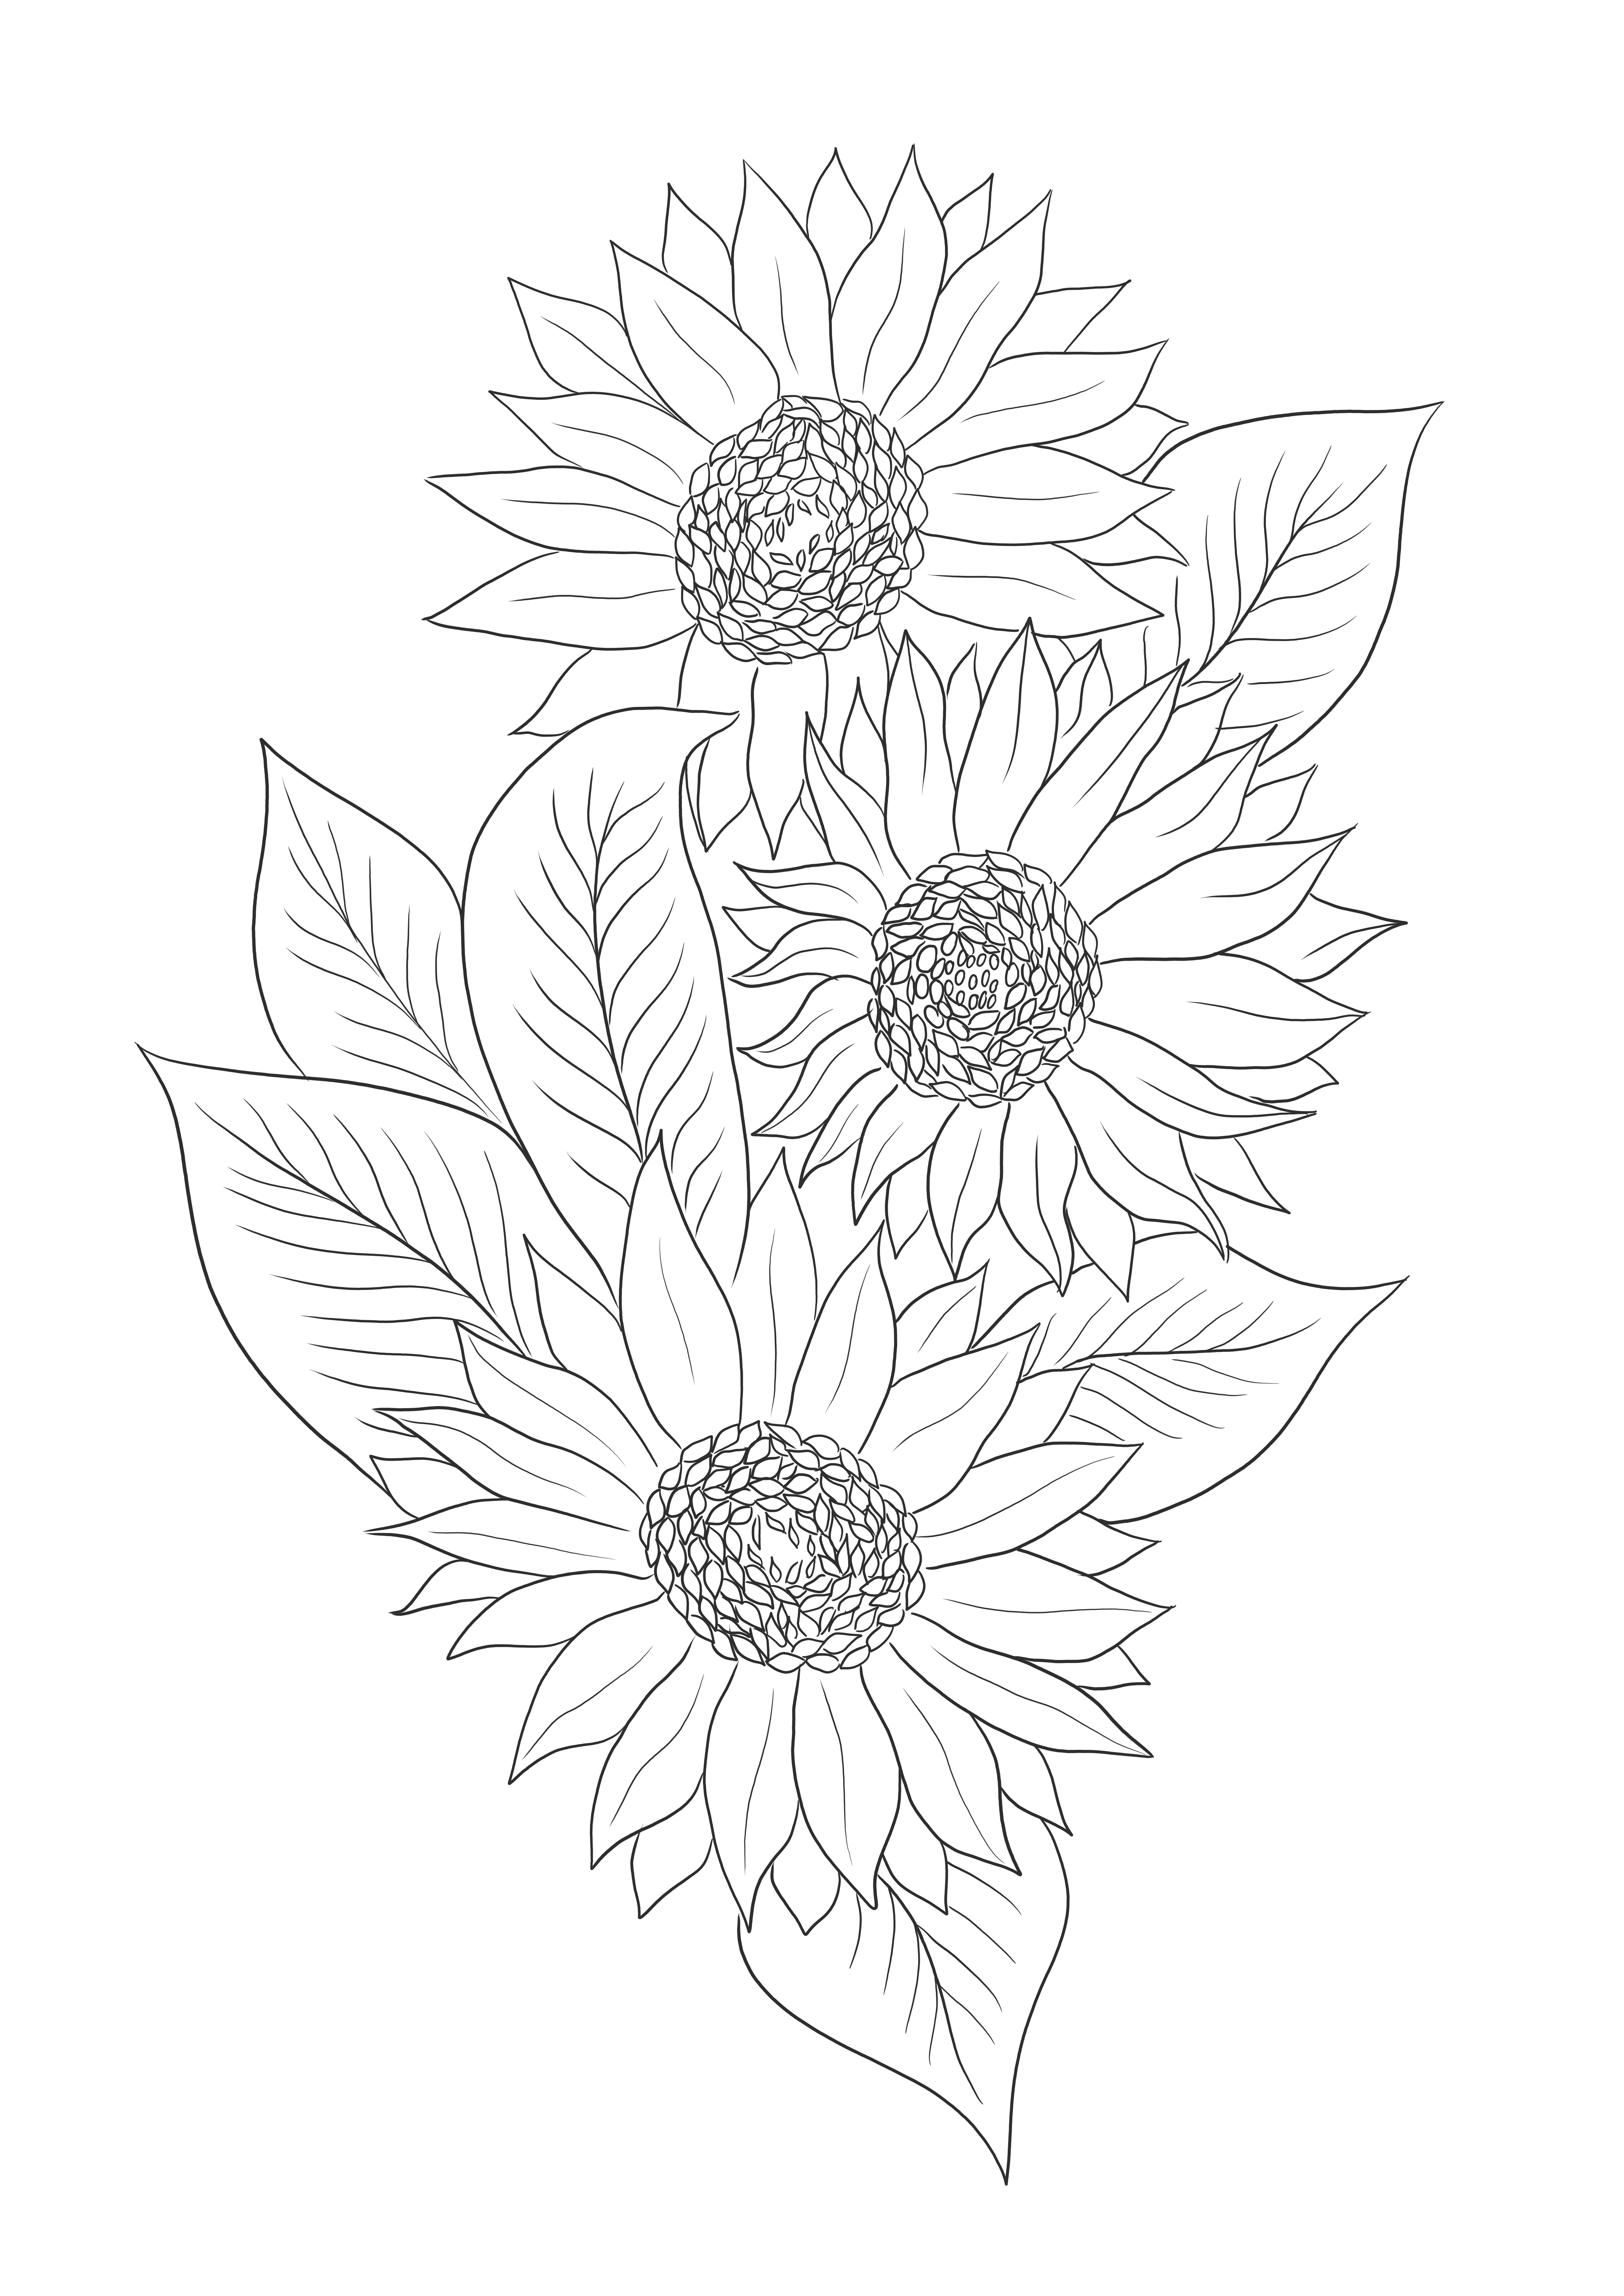 Pewarnaan mudah dari tiga bunga matahari gratis untuk dicetak dan diunduh